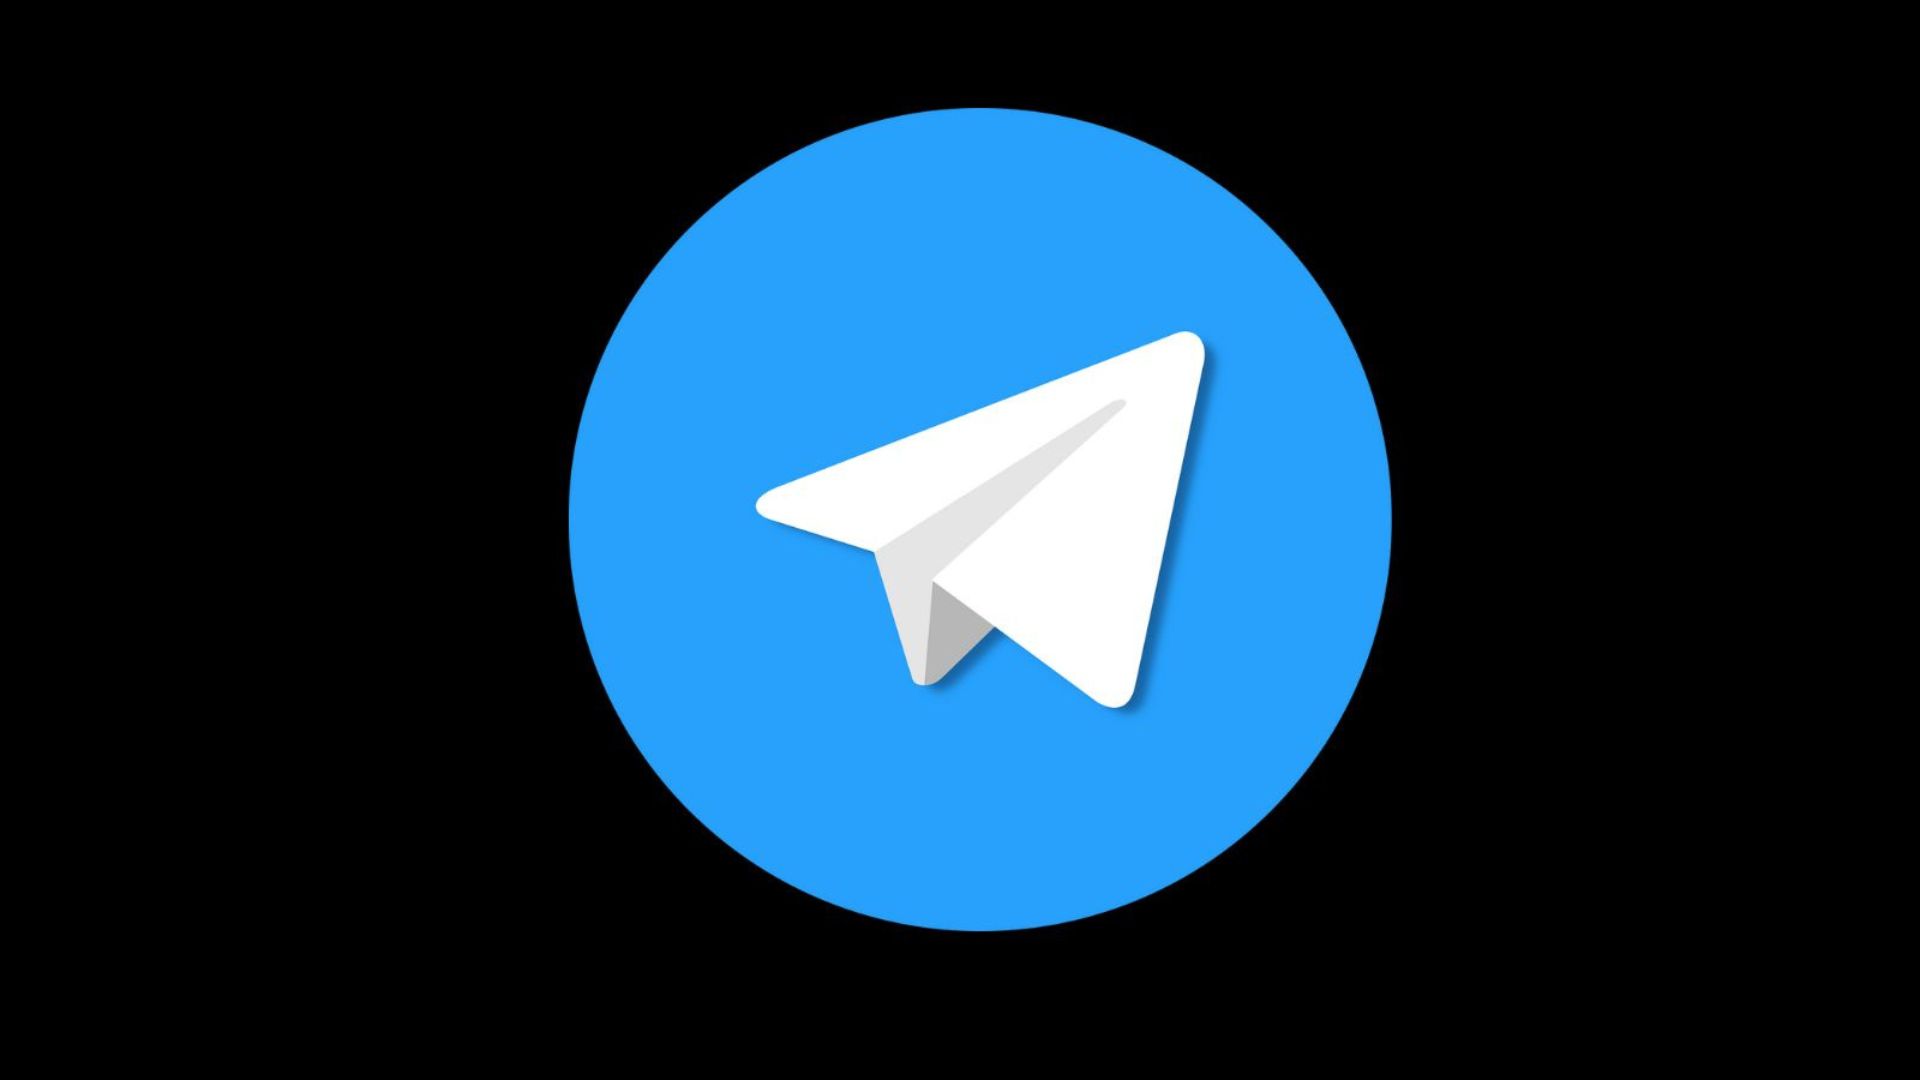 Telegram's newest update - Sticker Editor